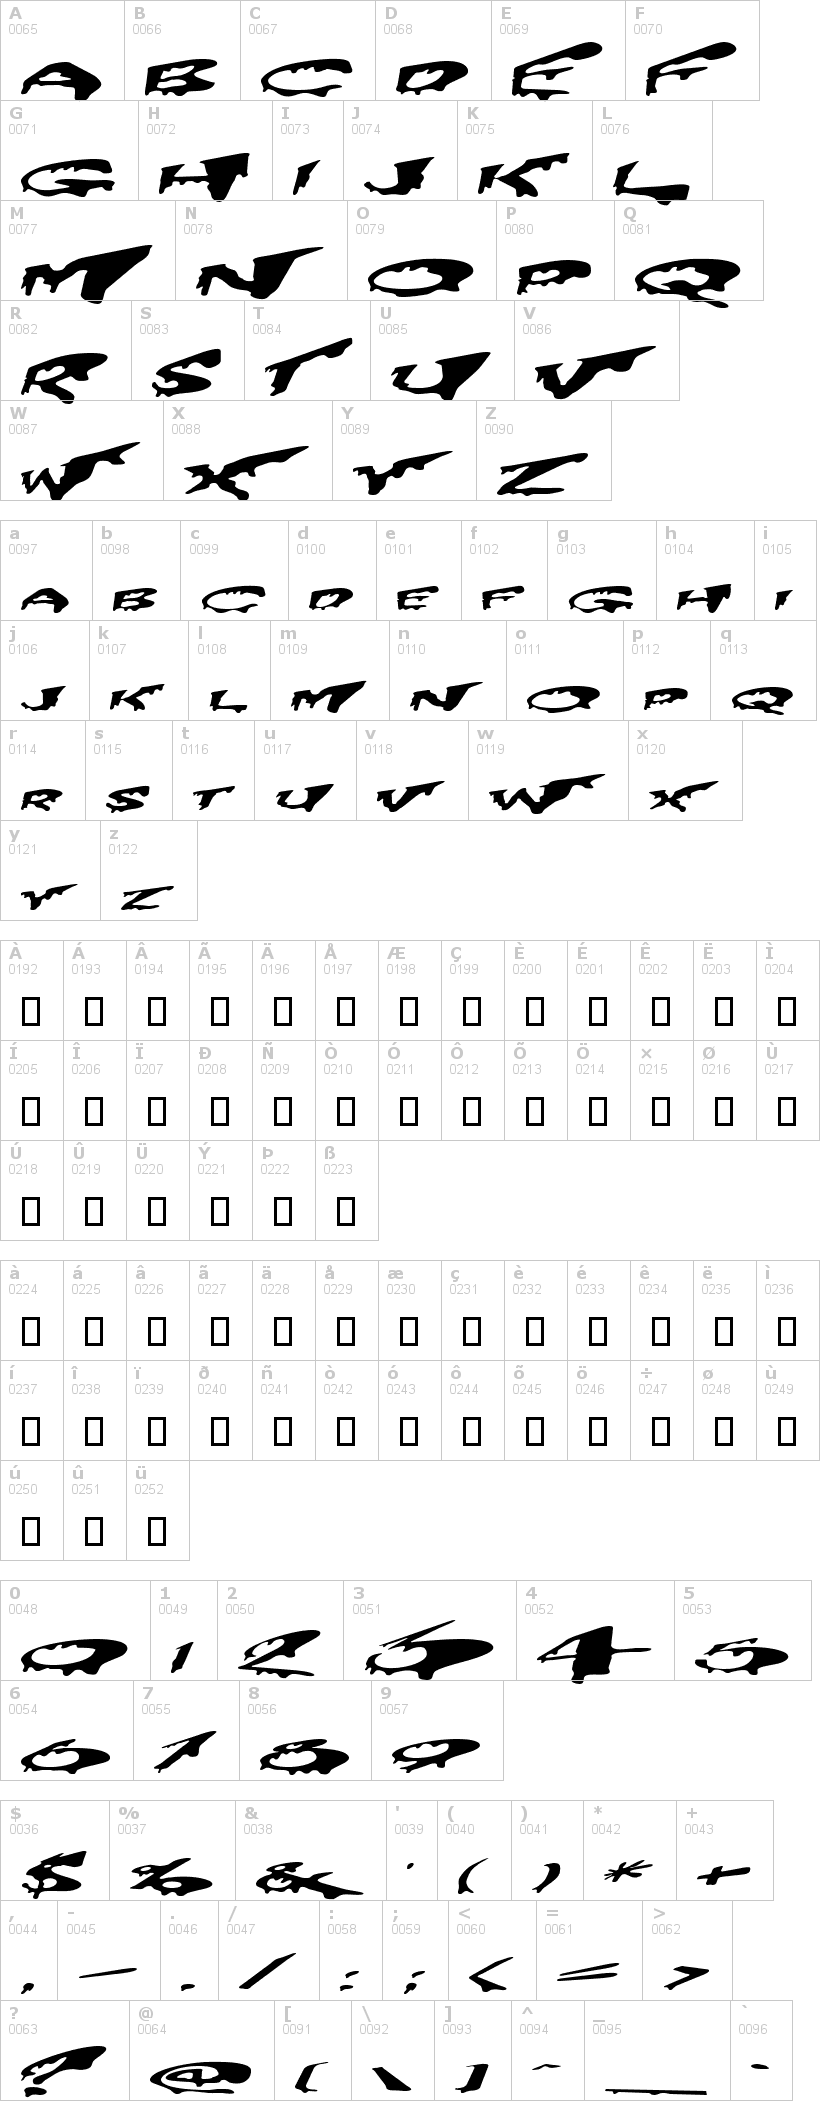 Lettere dell'alfabeto del font precrypt con le quali è possibile realizzare adesivi prespaziati